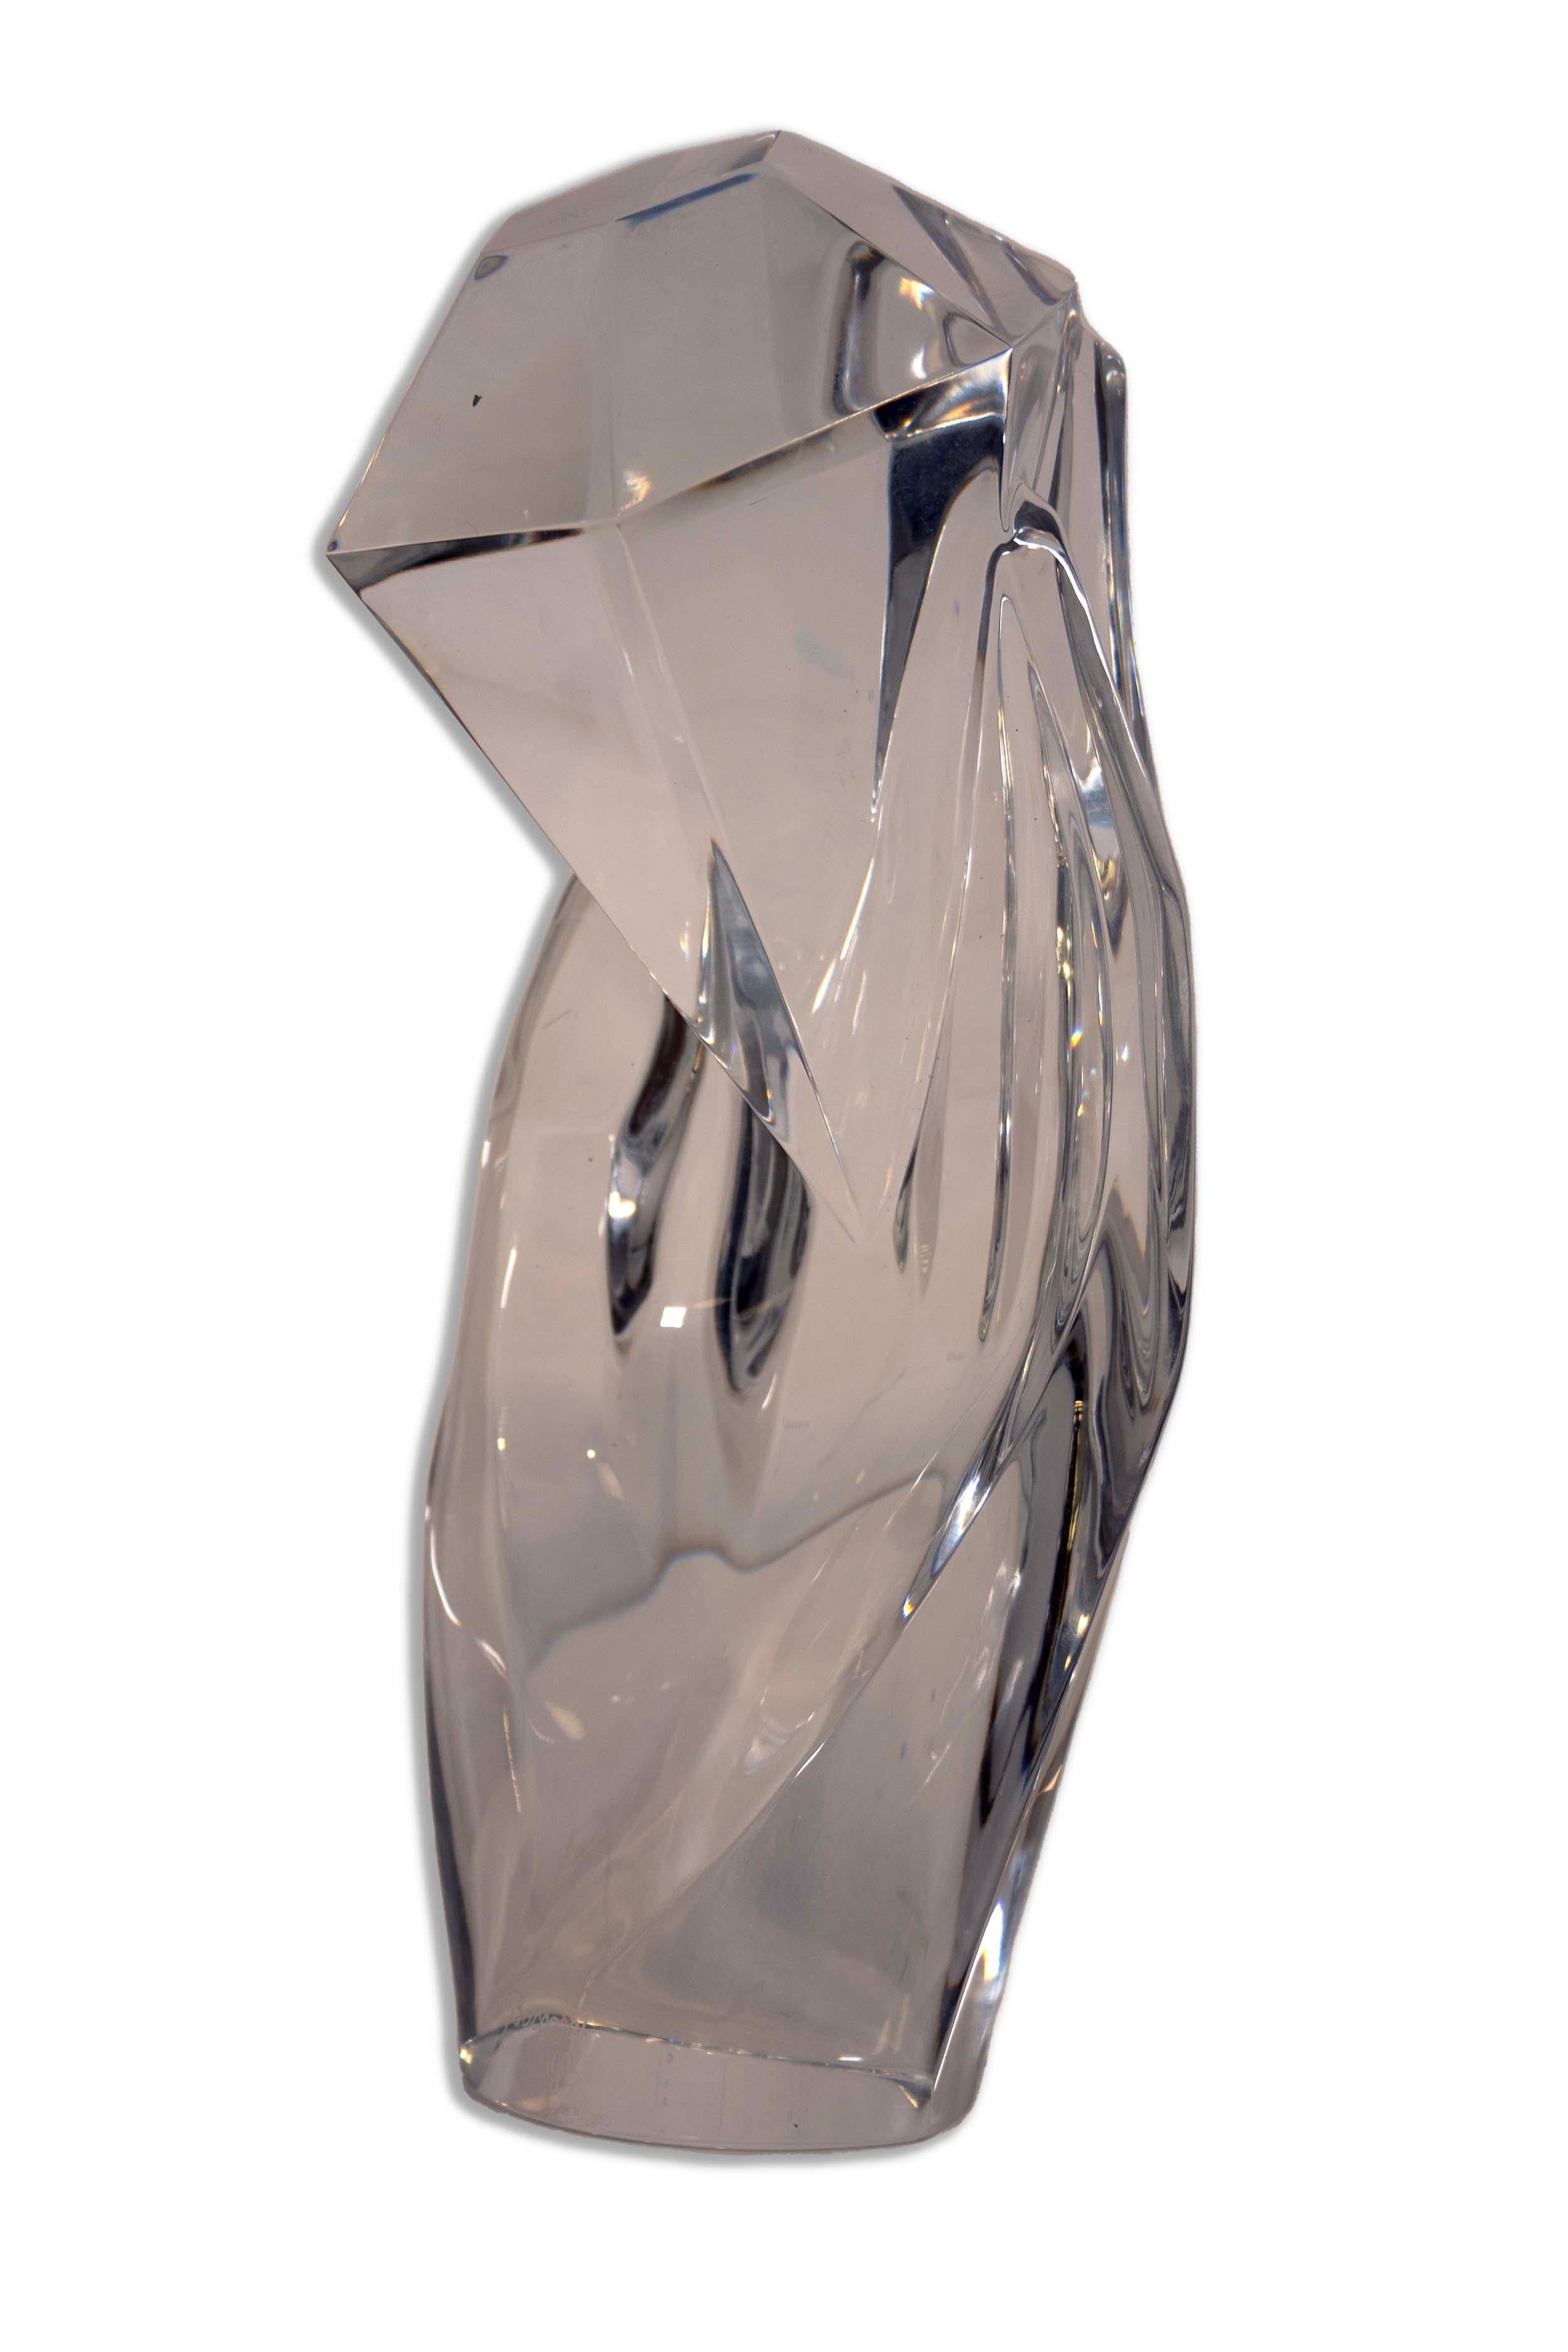 Voici le vase en cristal Baccarat Hand of Rigot, un chef-d'œuvre luxueux et sculptural fabriqué en France. Cette pièce exquise est un symbole d'élégance, mettant en valeur le savoir-faire emblématique de Baccarat avec sa surface lisse et